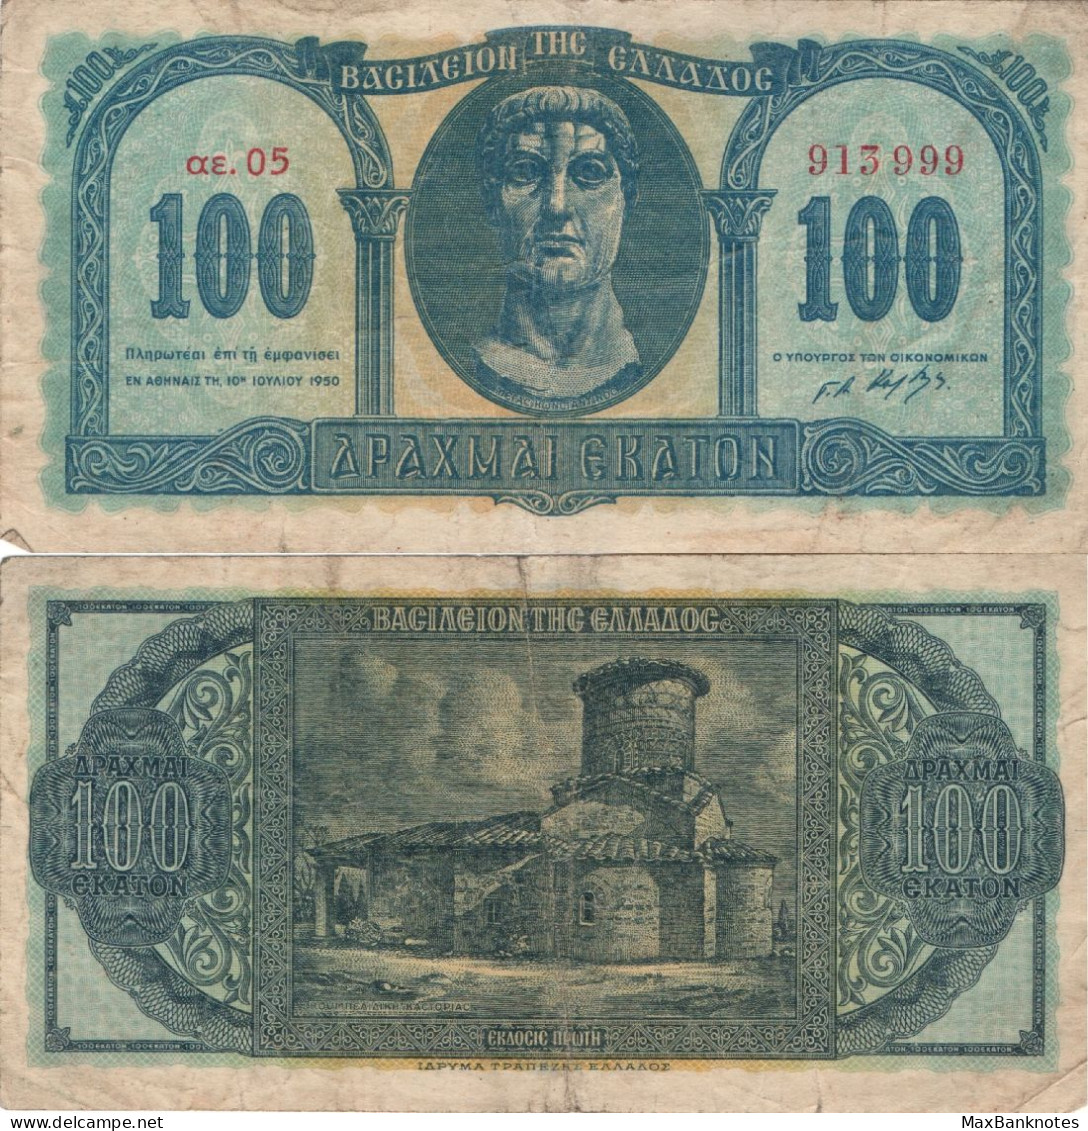 Greece / 100 Drachmai / 1950 / P-324(a) / VF - Grecia